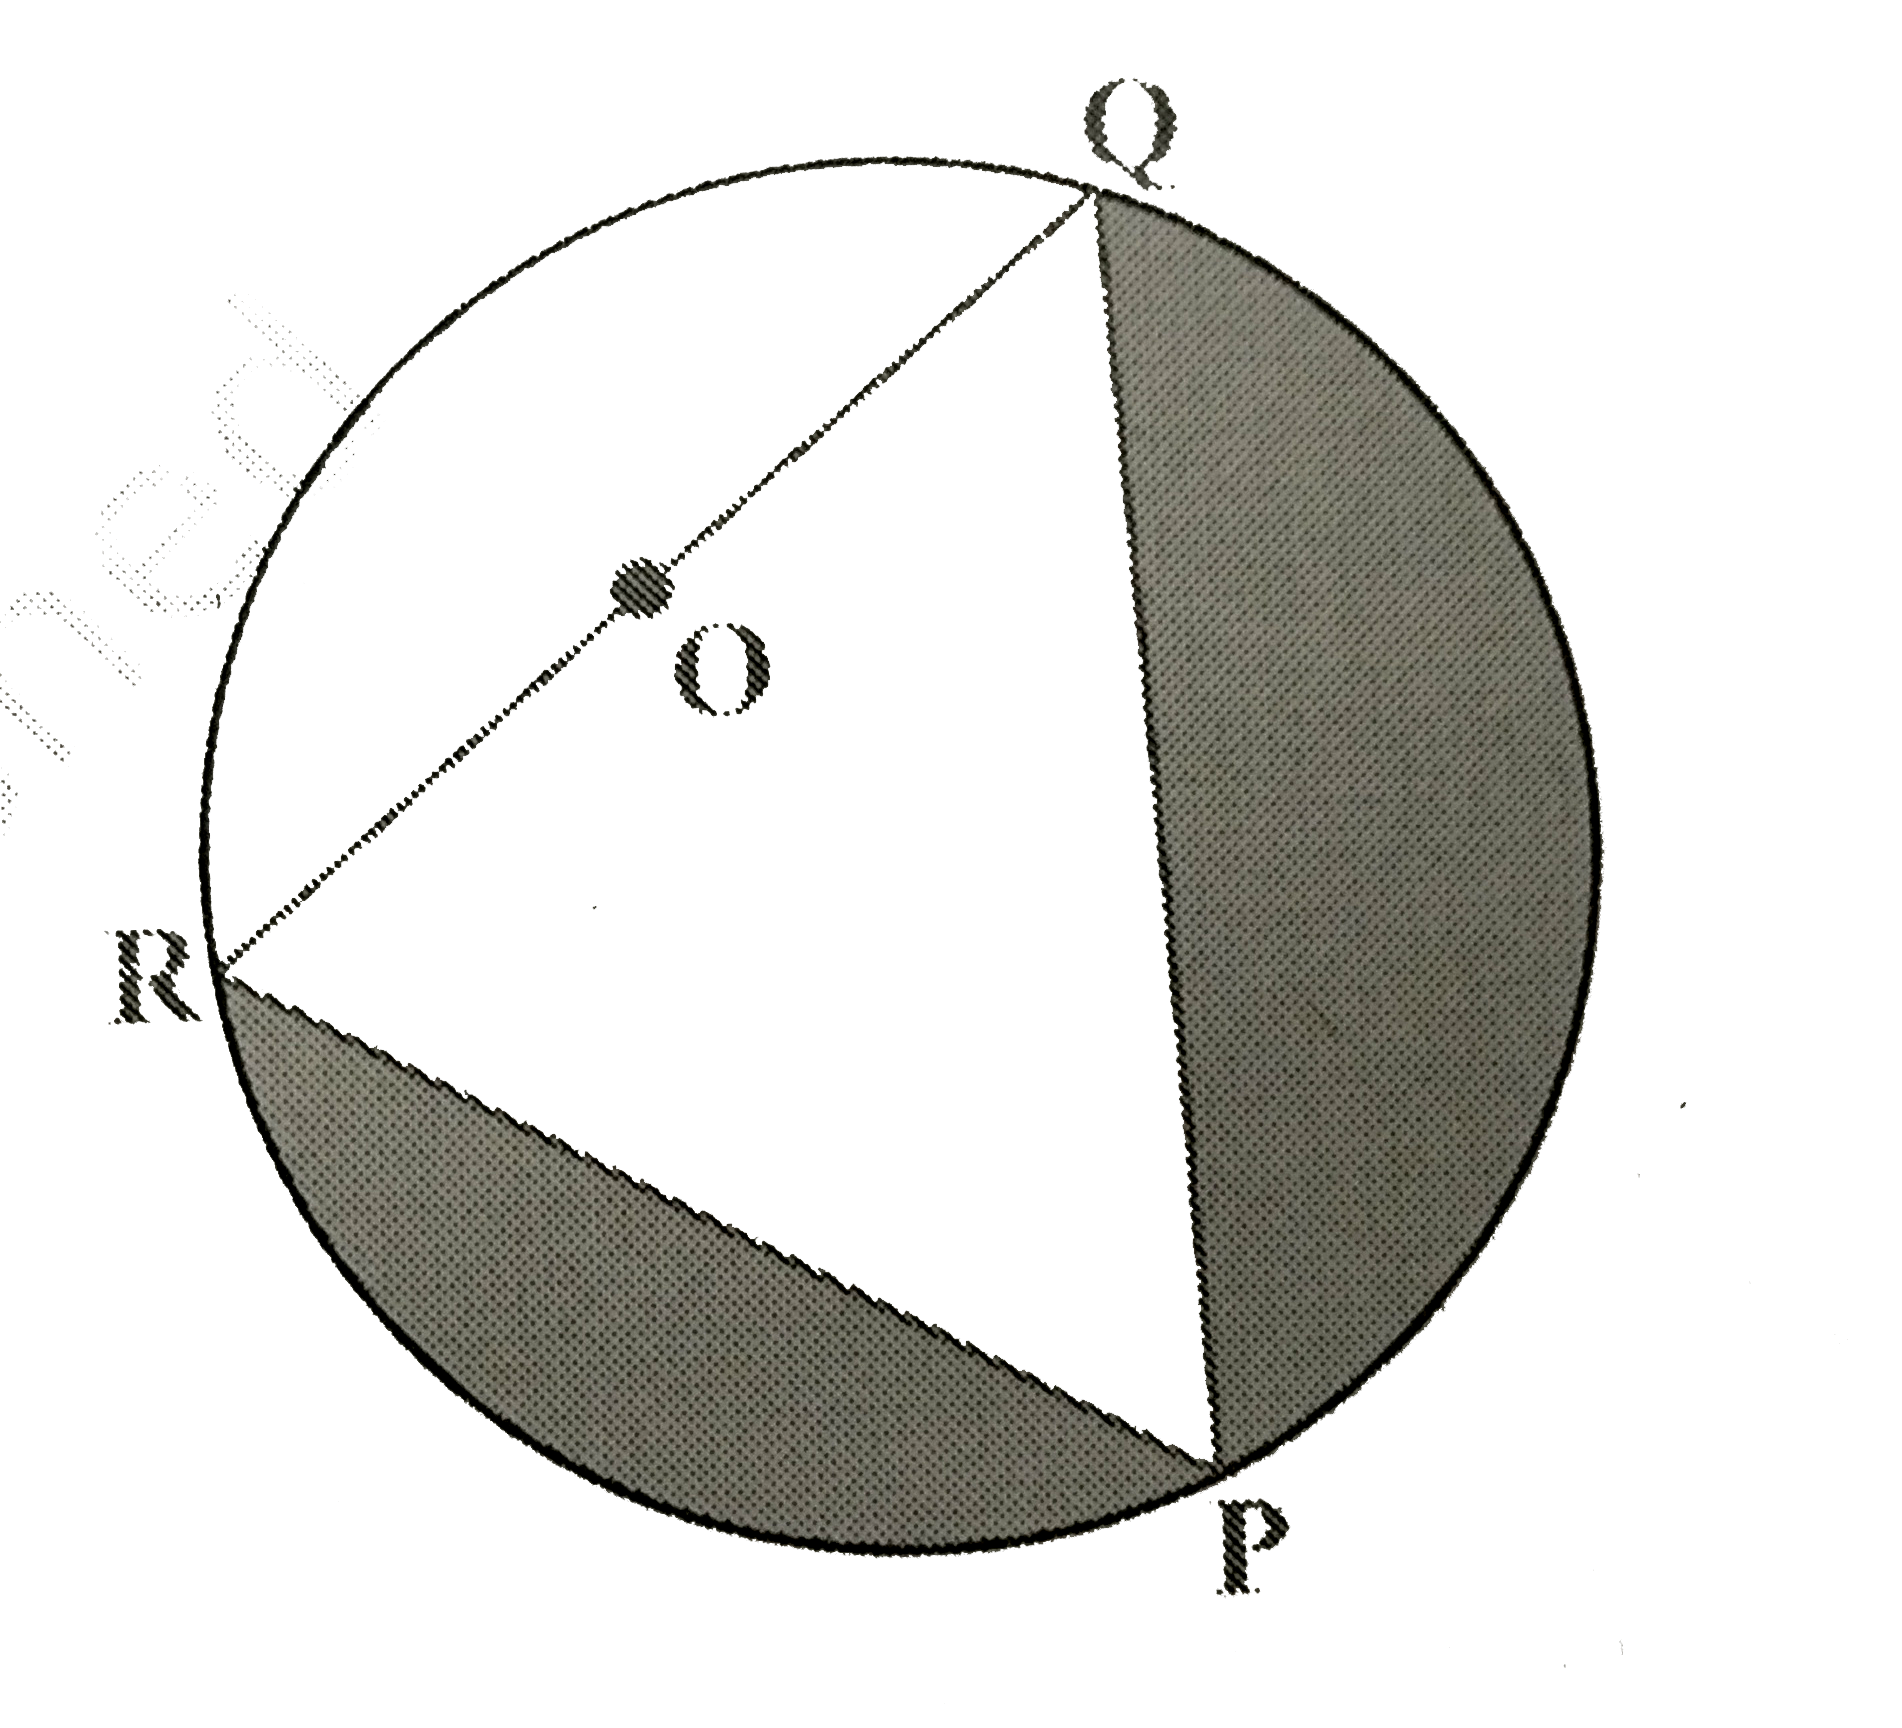 आकृति में छायांकित भाग का क्षेत्रफल ज्ञात कीजिए, यदि PQ=24cm, PR=7cm और  O वृत्त का केंद्र है।